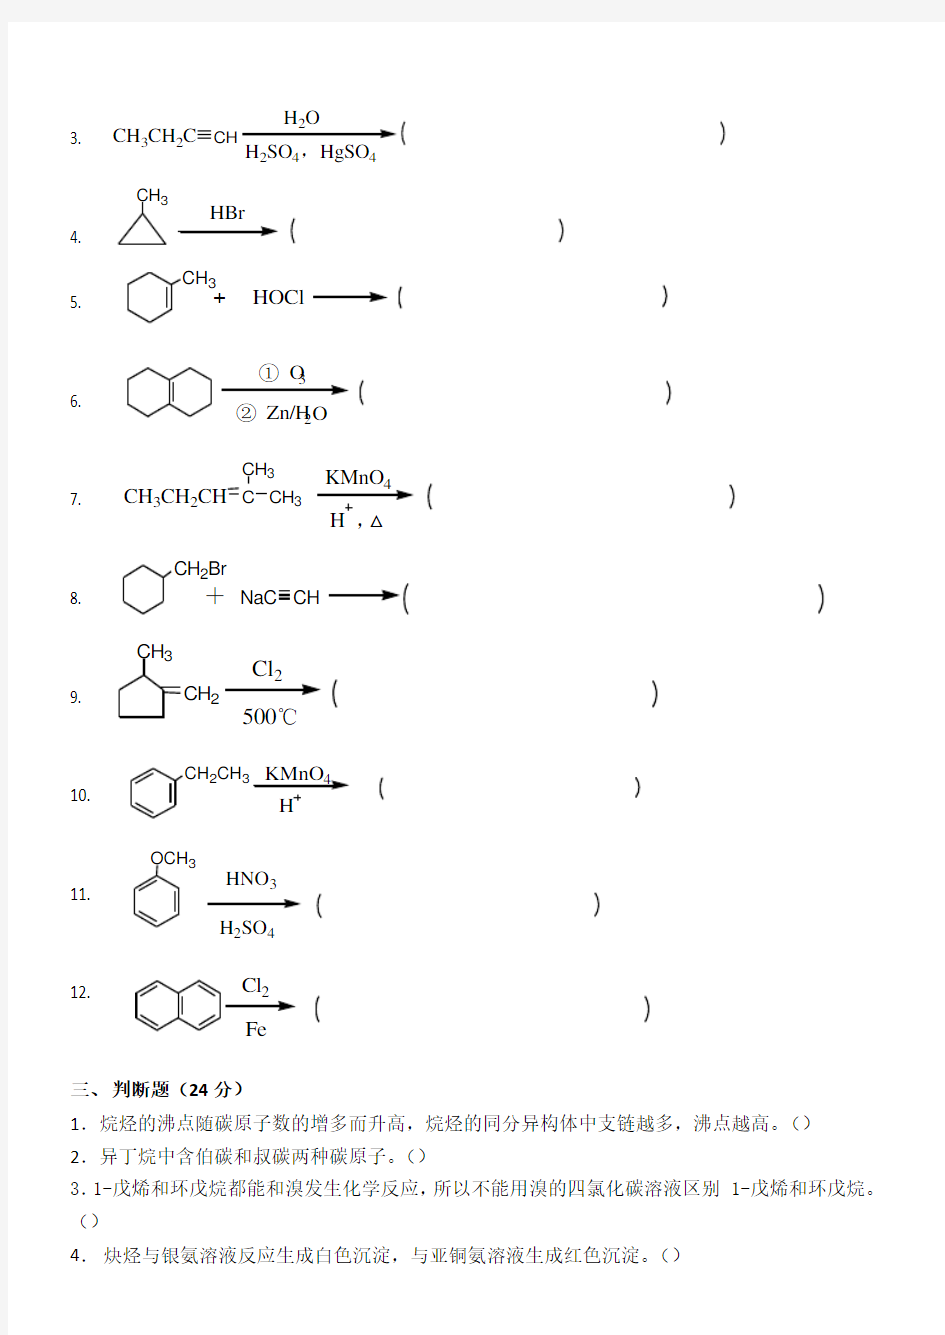 江南大学 20秋 有机化学I第1阶段练习题答案  答案在最后一页